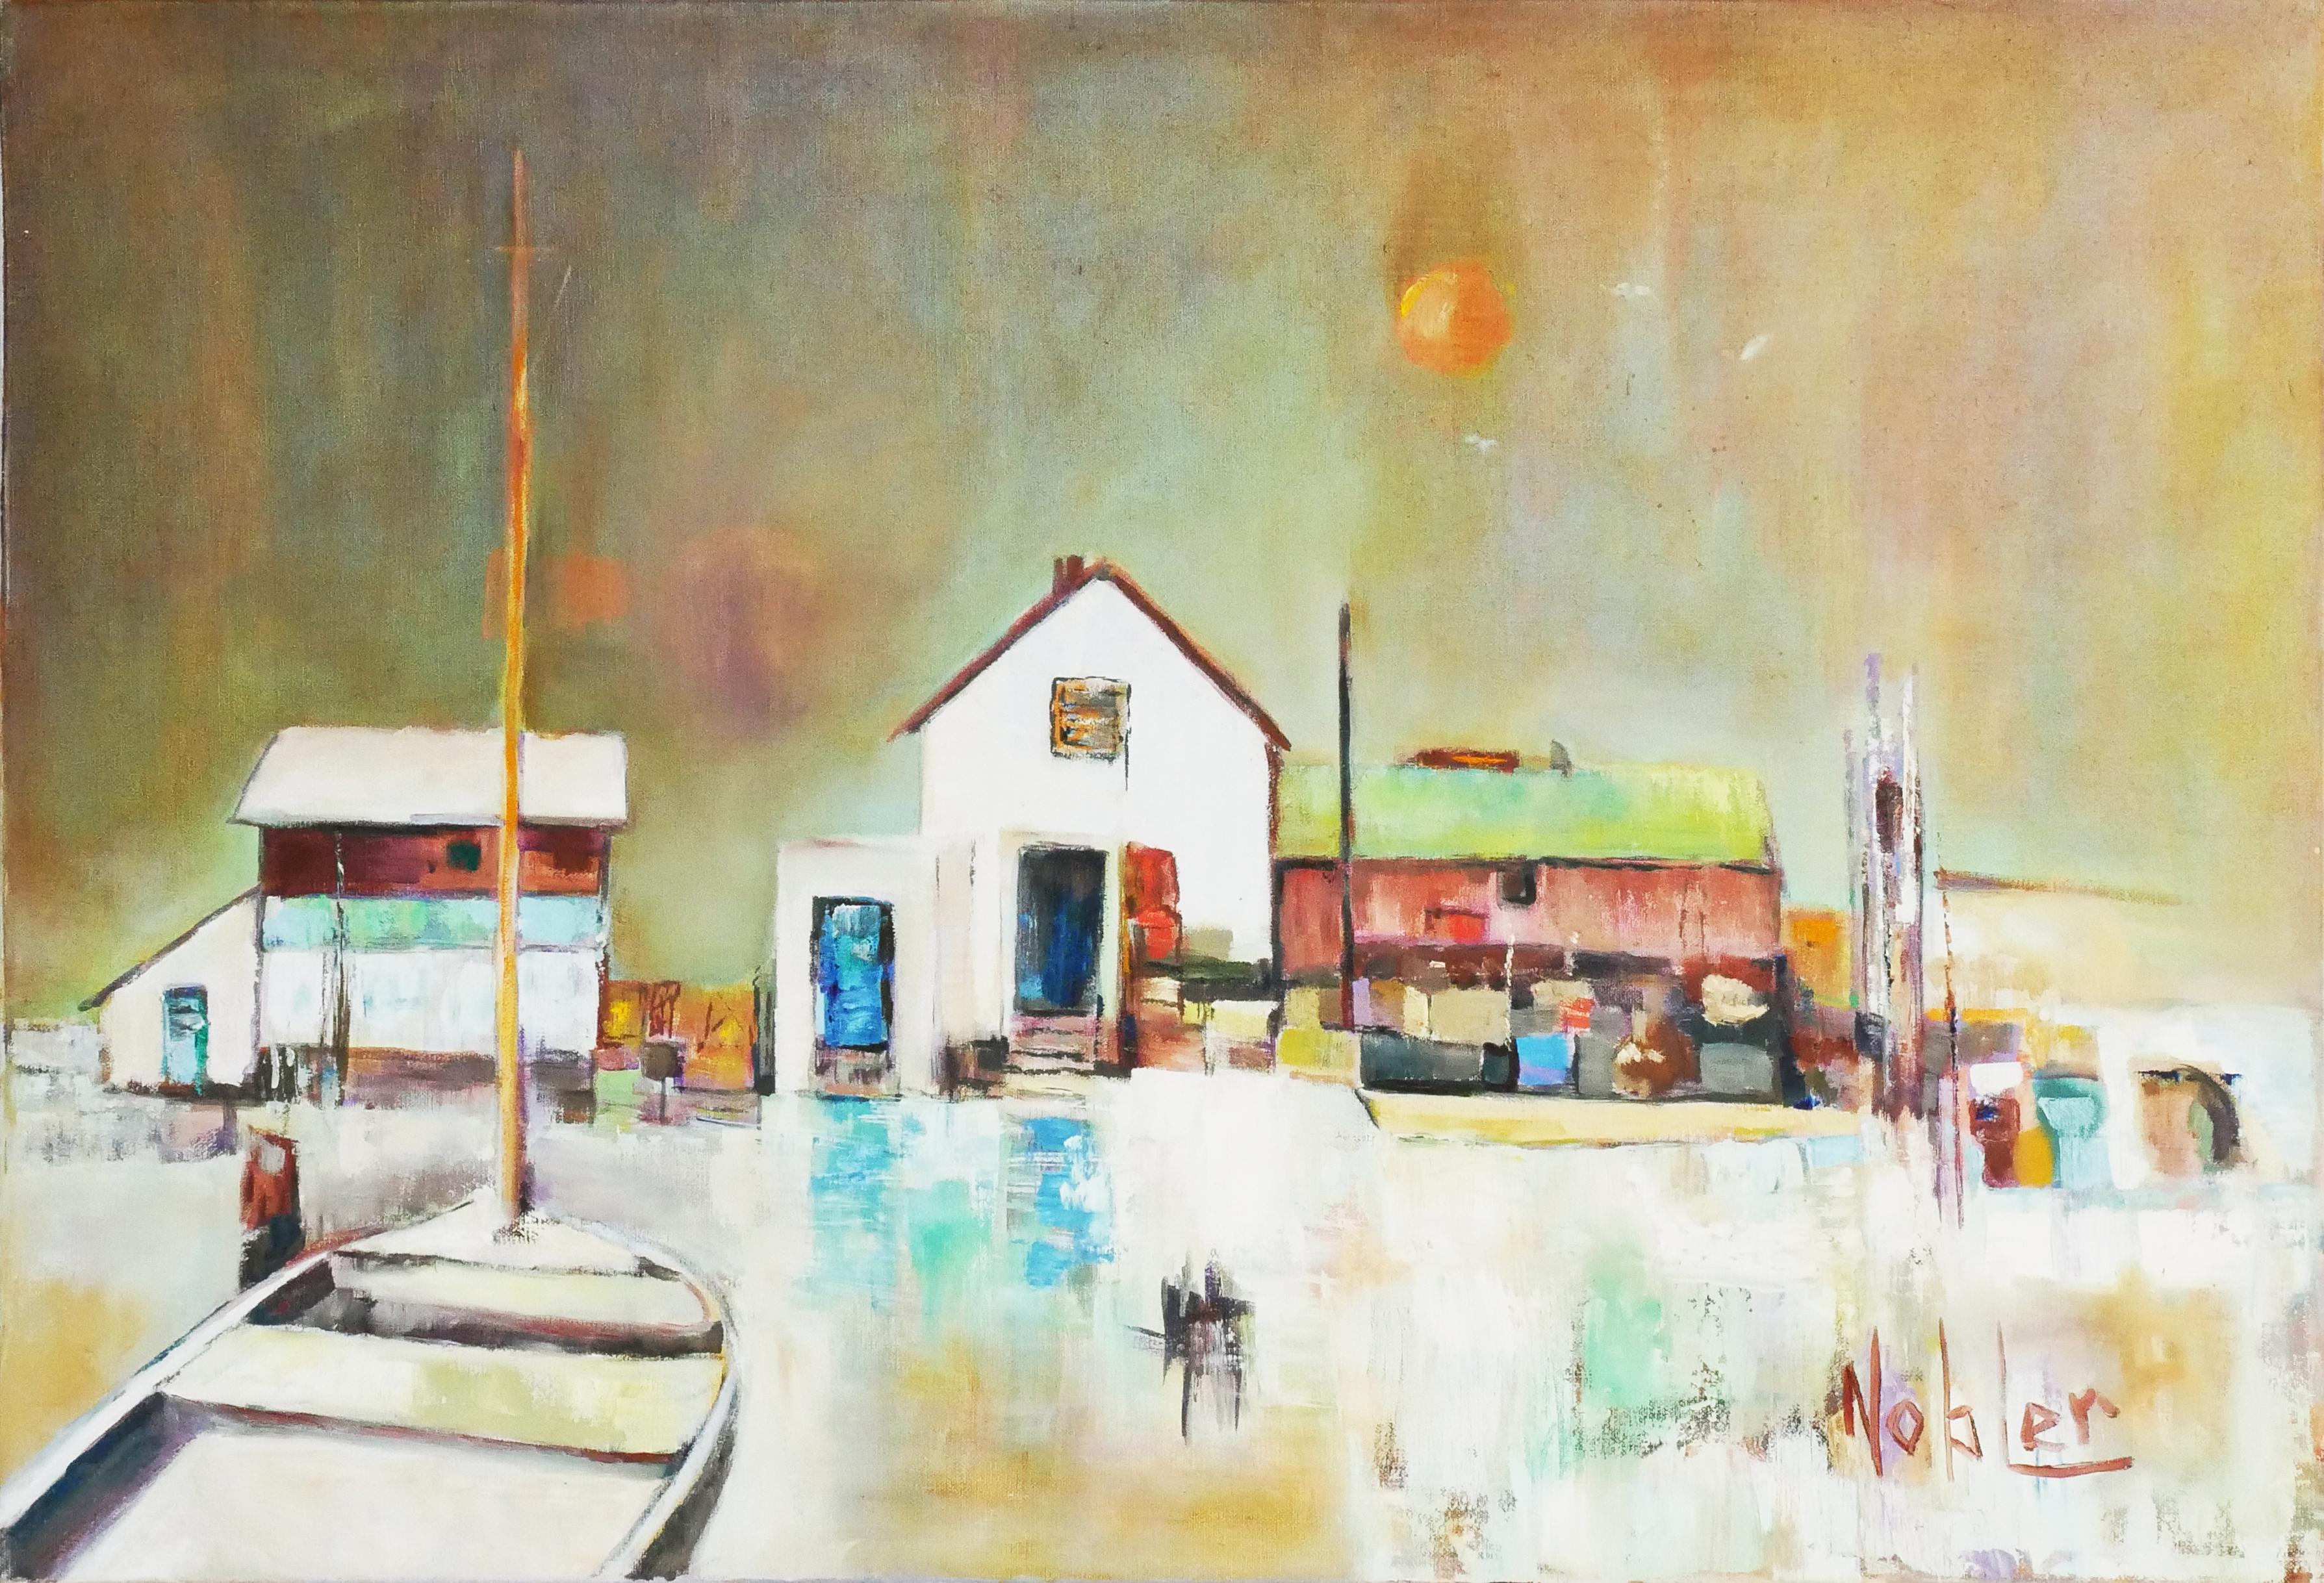 Landscape Painting Margaret Nobler - Peinture de paysage moderne abstraite d'inspiration cubiste d'un chantier naval en bord de mer